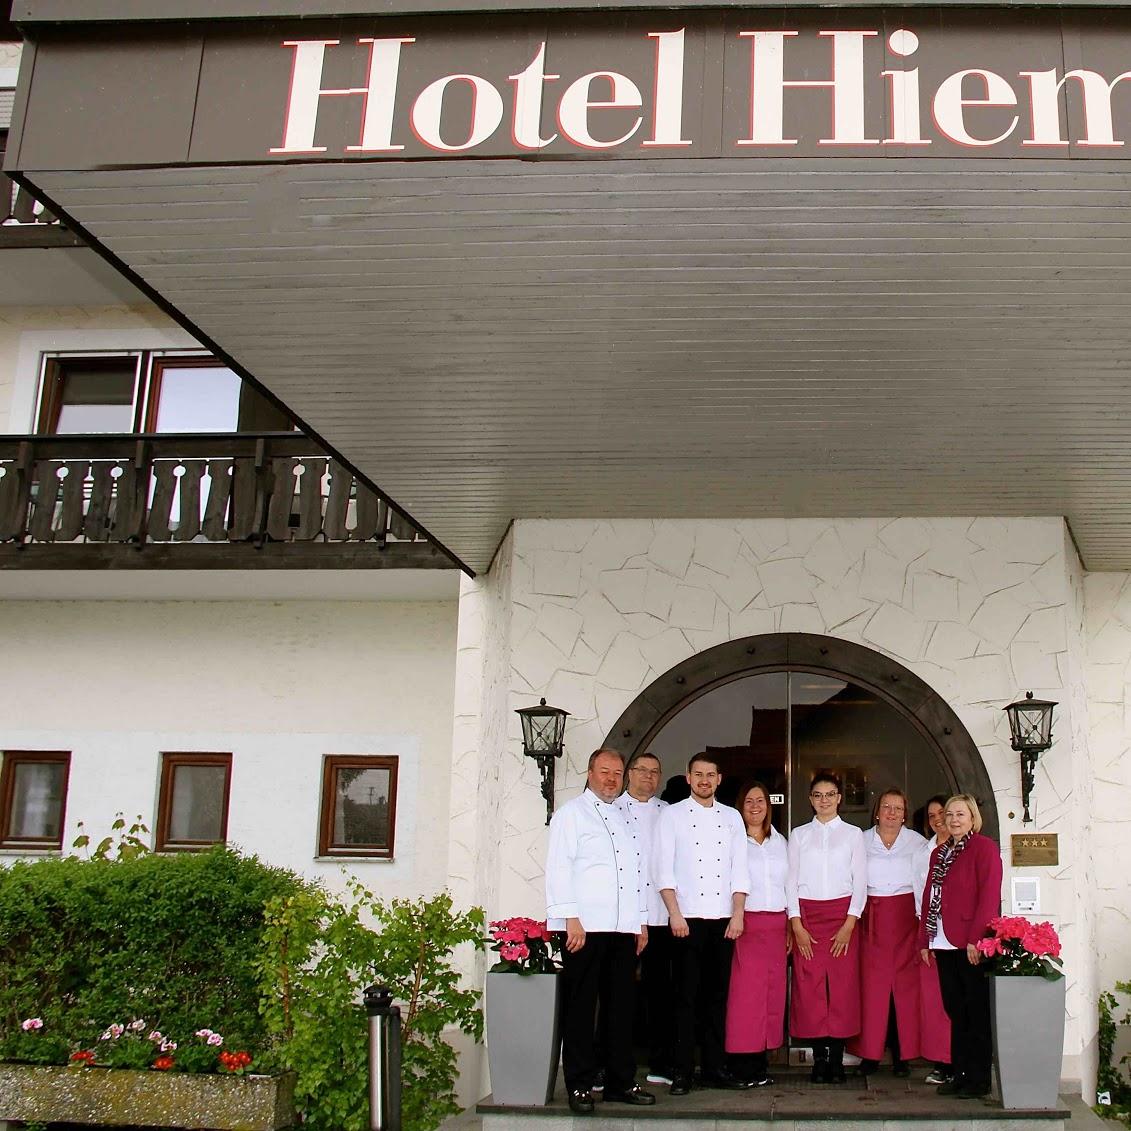 Restaurant "Hotel Hiemer" in Memmingen